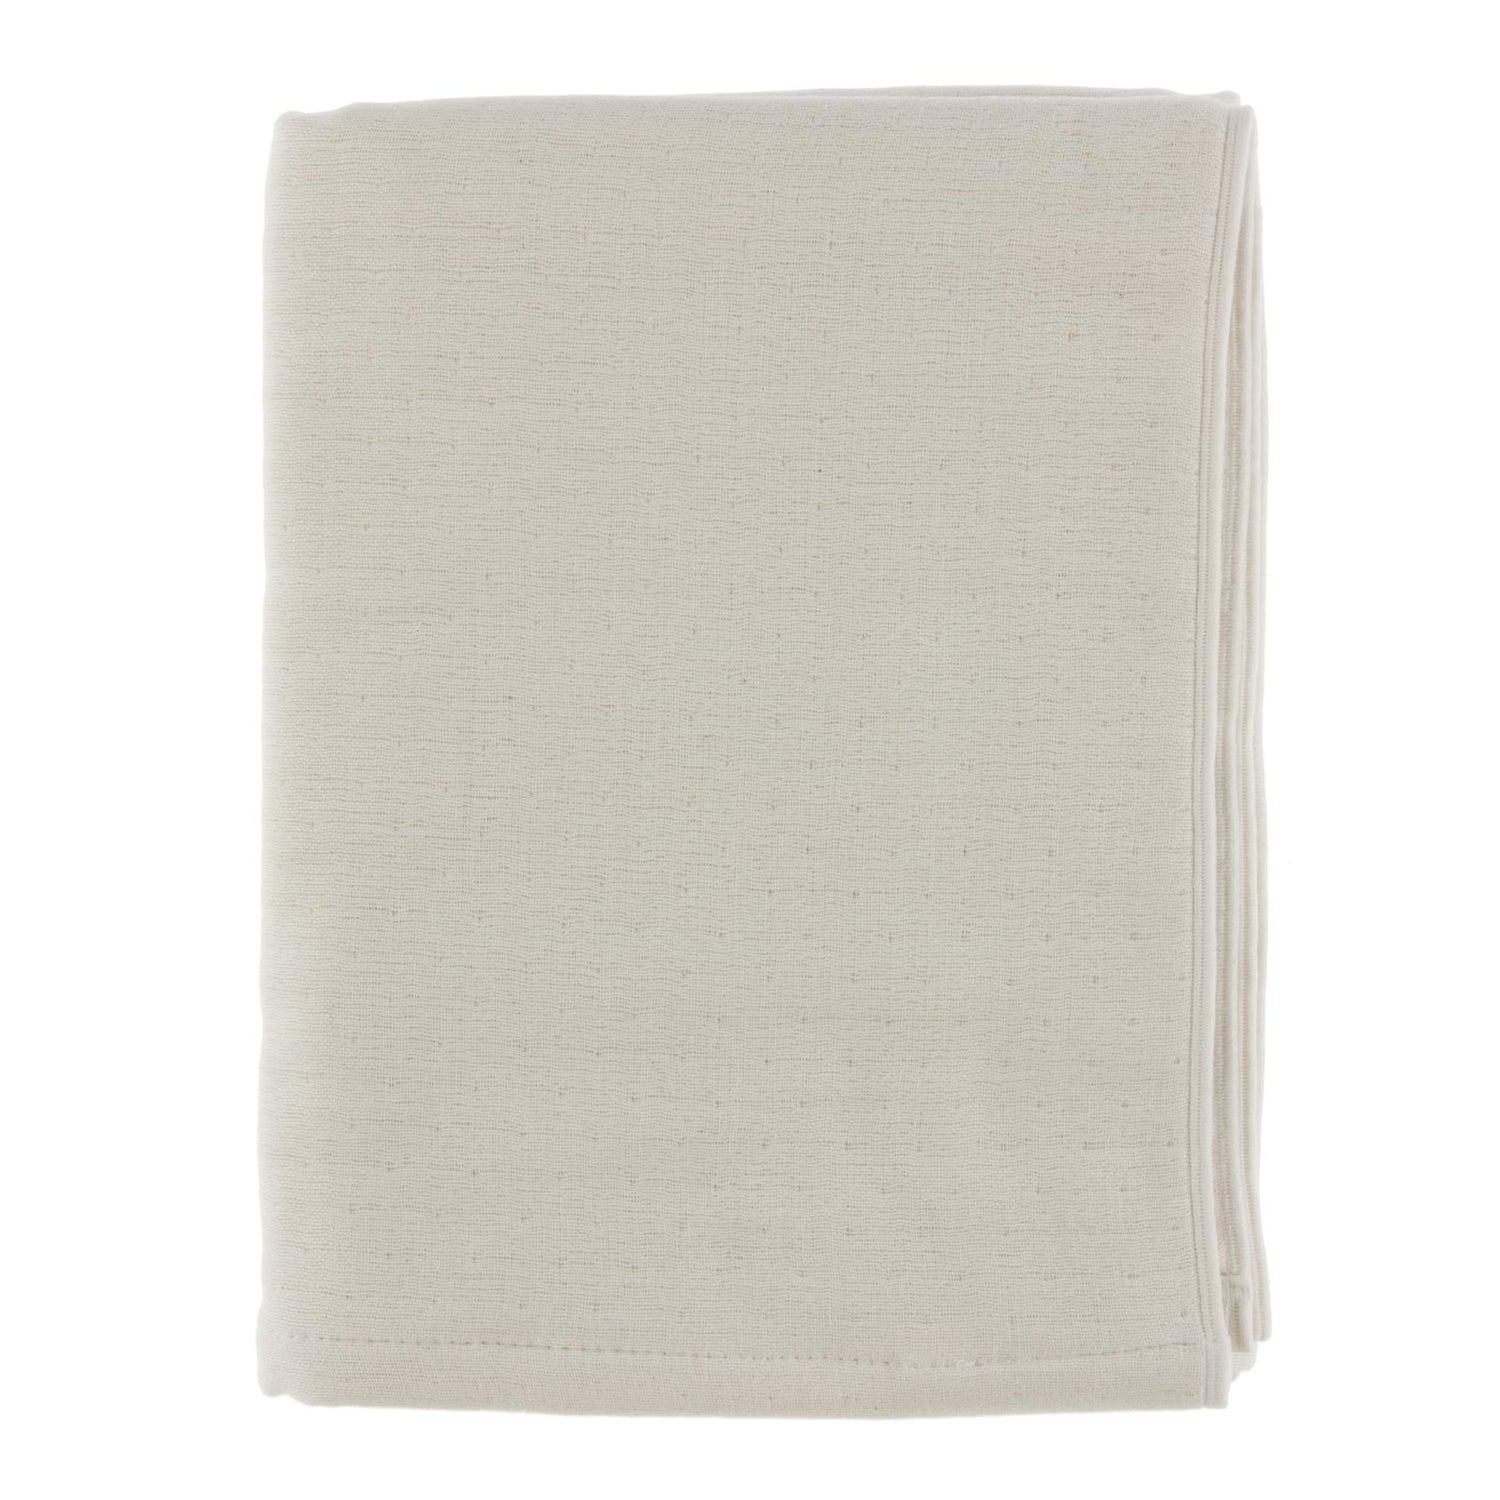 Muslin Bath Towel in White